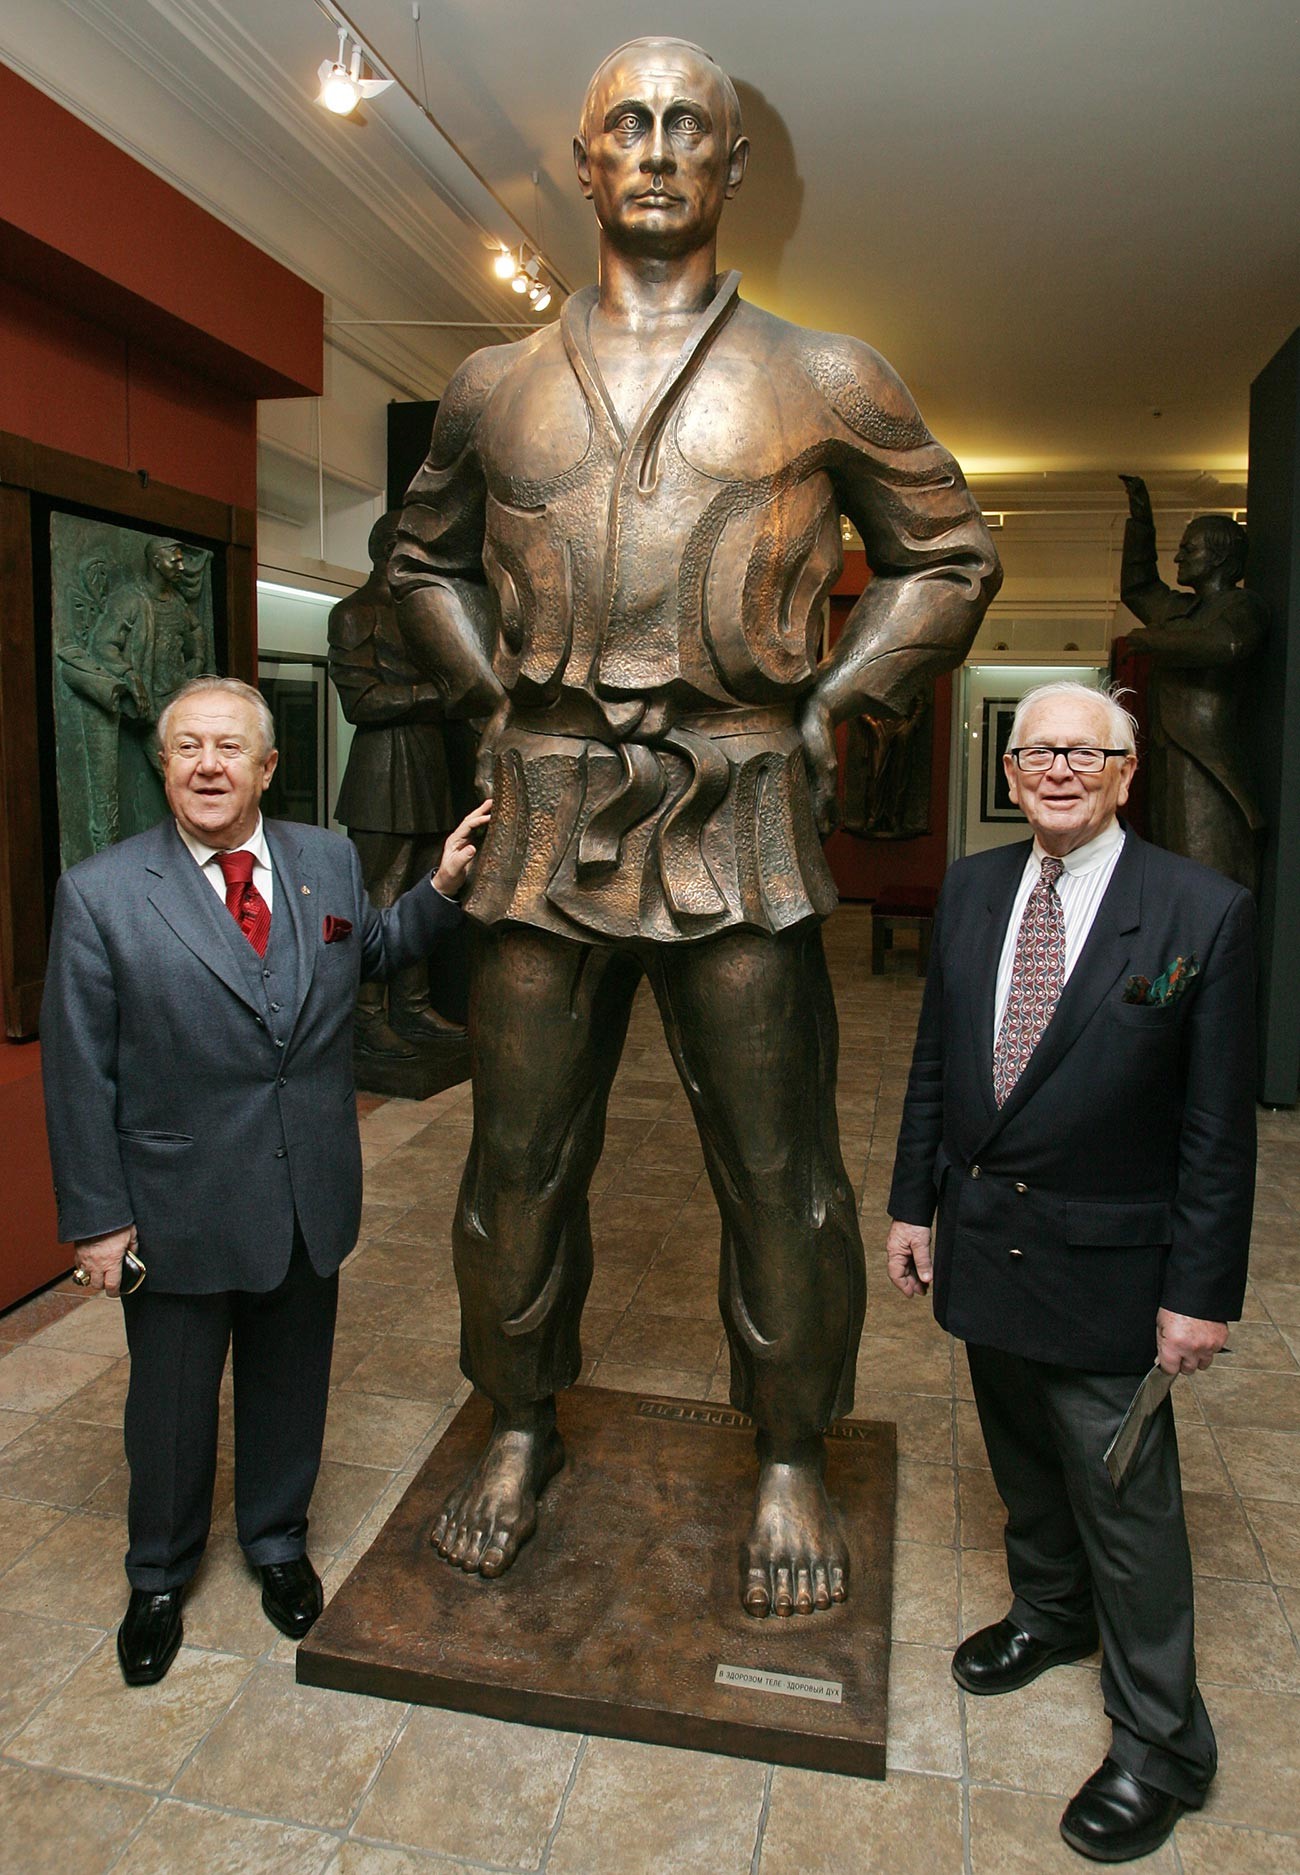 Pierre Cardin posant près d'une statue de Vladimir Poutine au sein de la galerie du sculpteur Zourab Tsereteli en novembre 2008. Tsereteli, président de l'Académie des arts de Russie, l'a alors récompensé du titre de membre honorifique de l'institution.